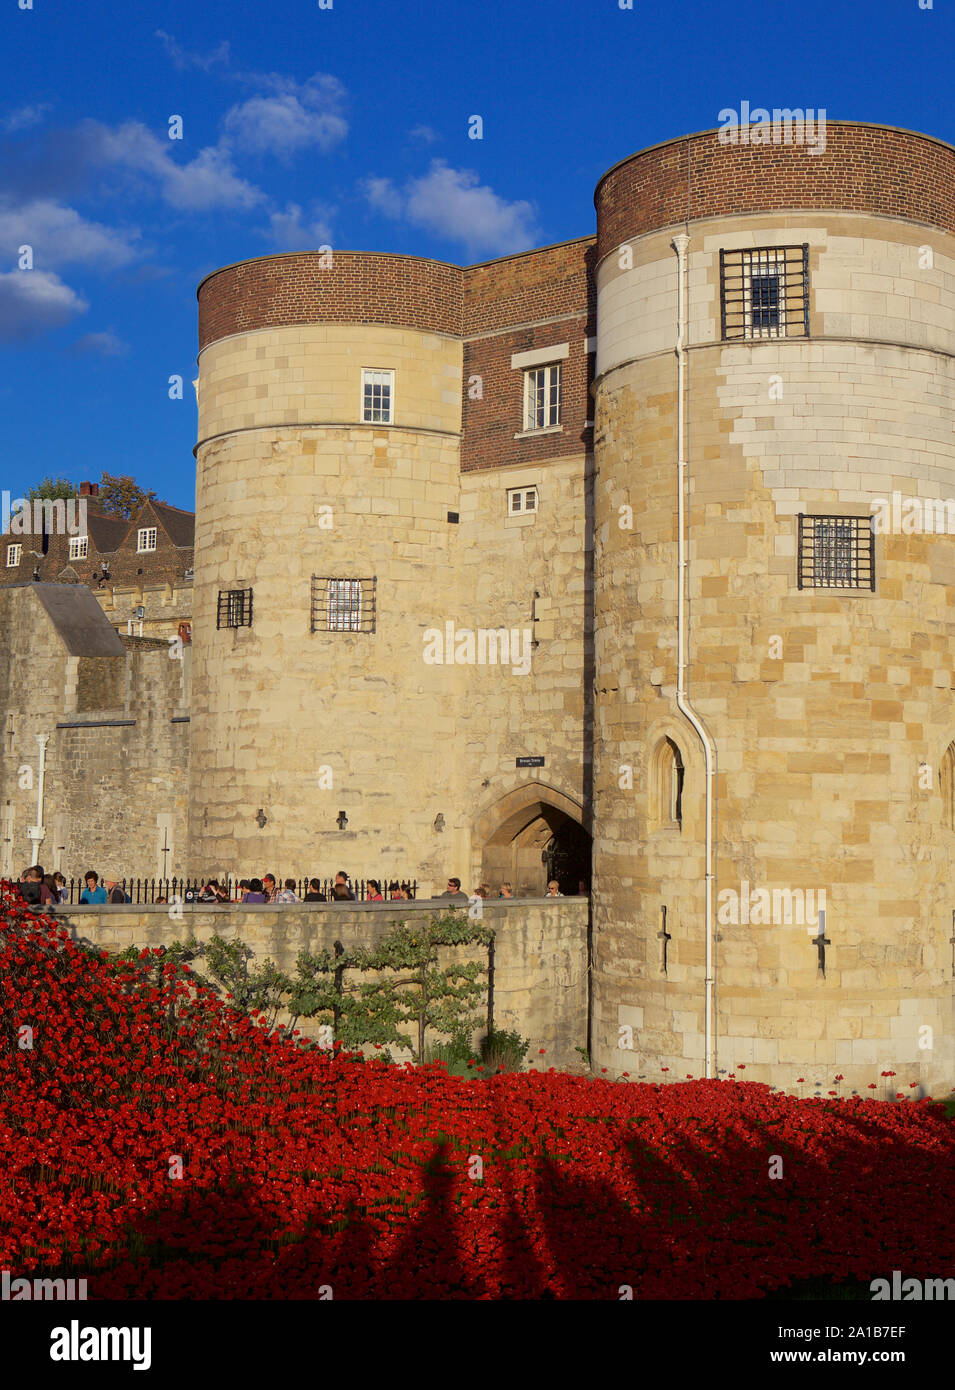 Blut fegte Länder und Meere der Roten Installation am Tower von London Kennzeichnung 100 Jahre seit dem 1. Weltkrieg. Stockfoto